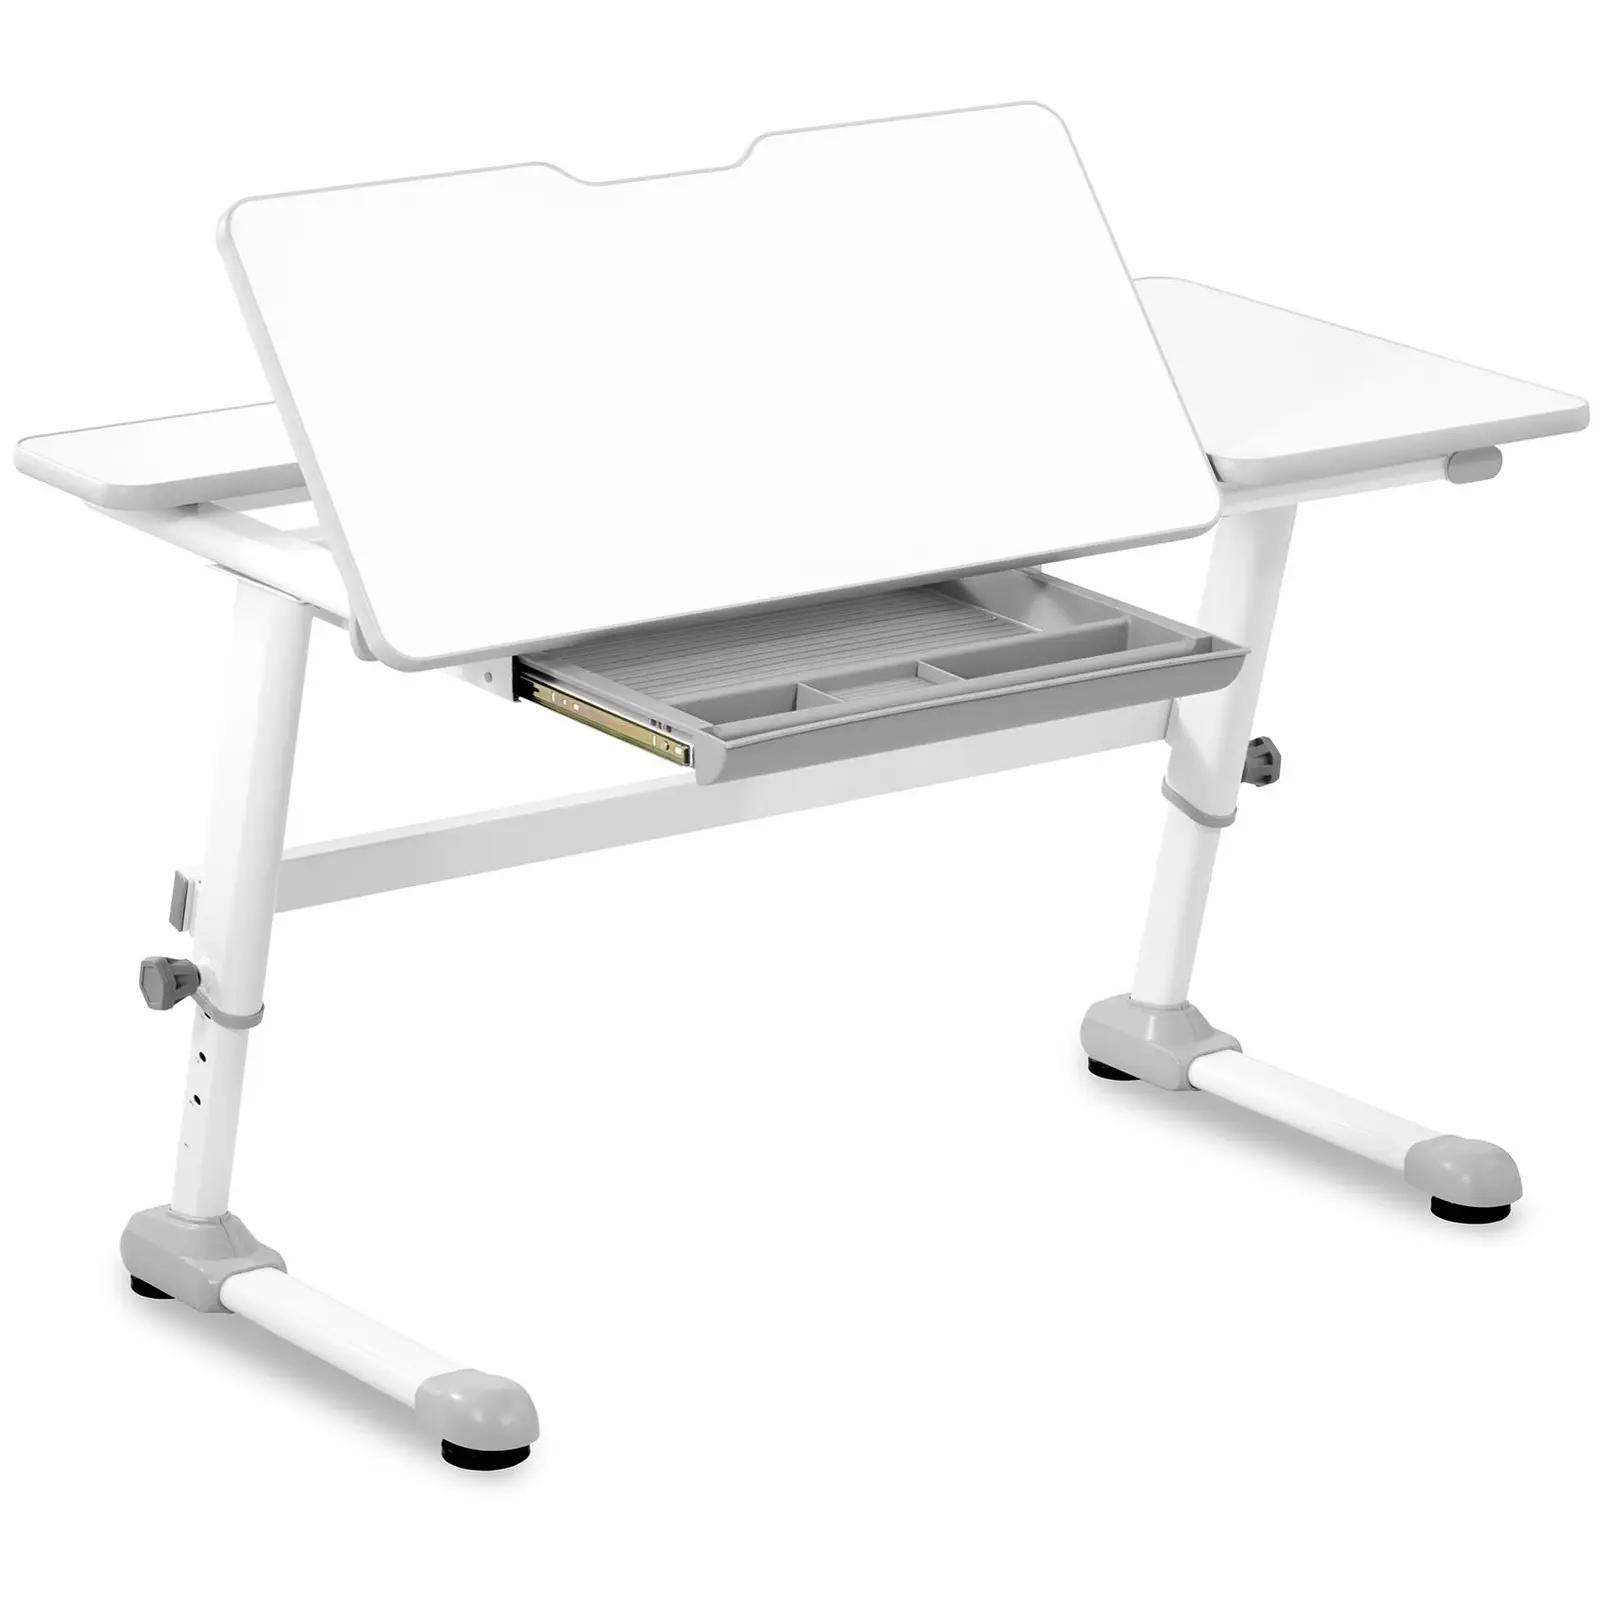 Detský písací stôl - výškovo nastaviteľný - 120 x 66 cm - sklopný 0 – 50° - výška: 600 – 760 mm - so zásuvkou